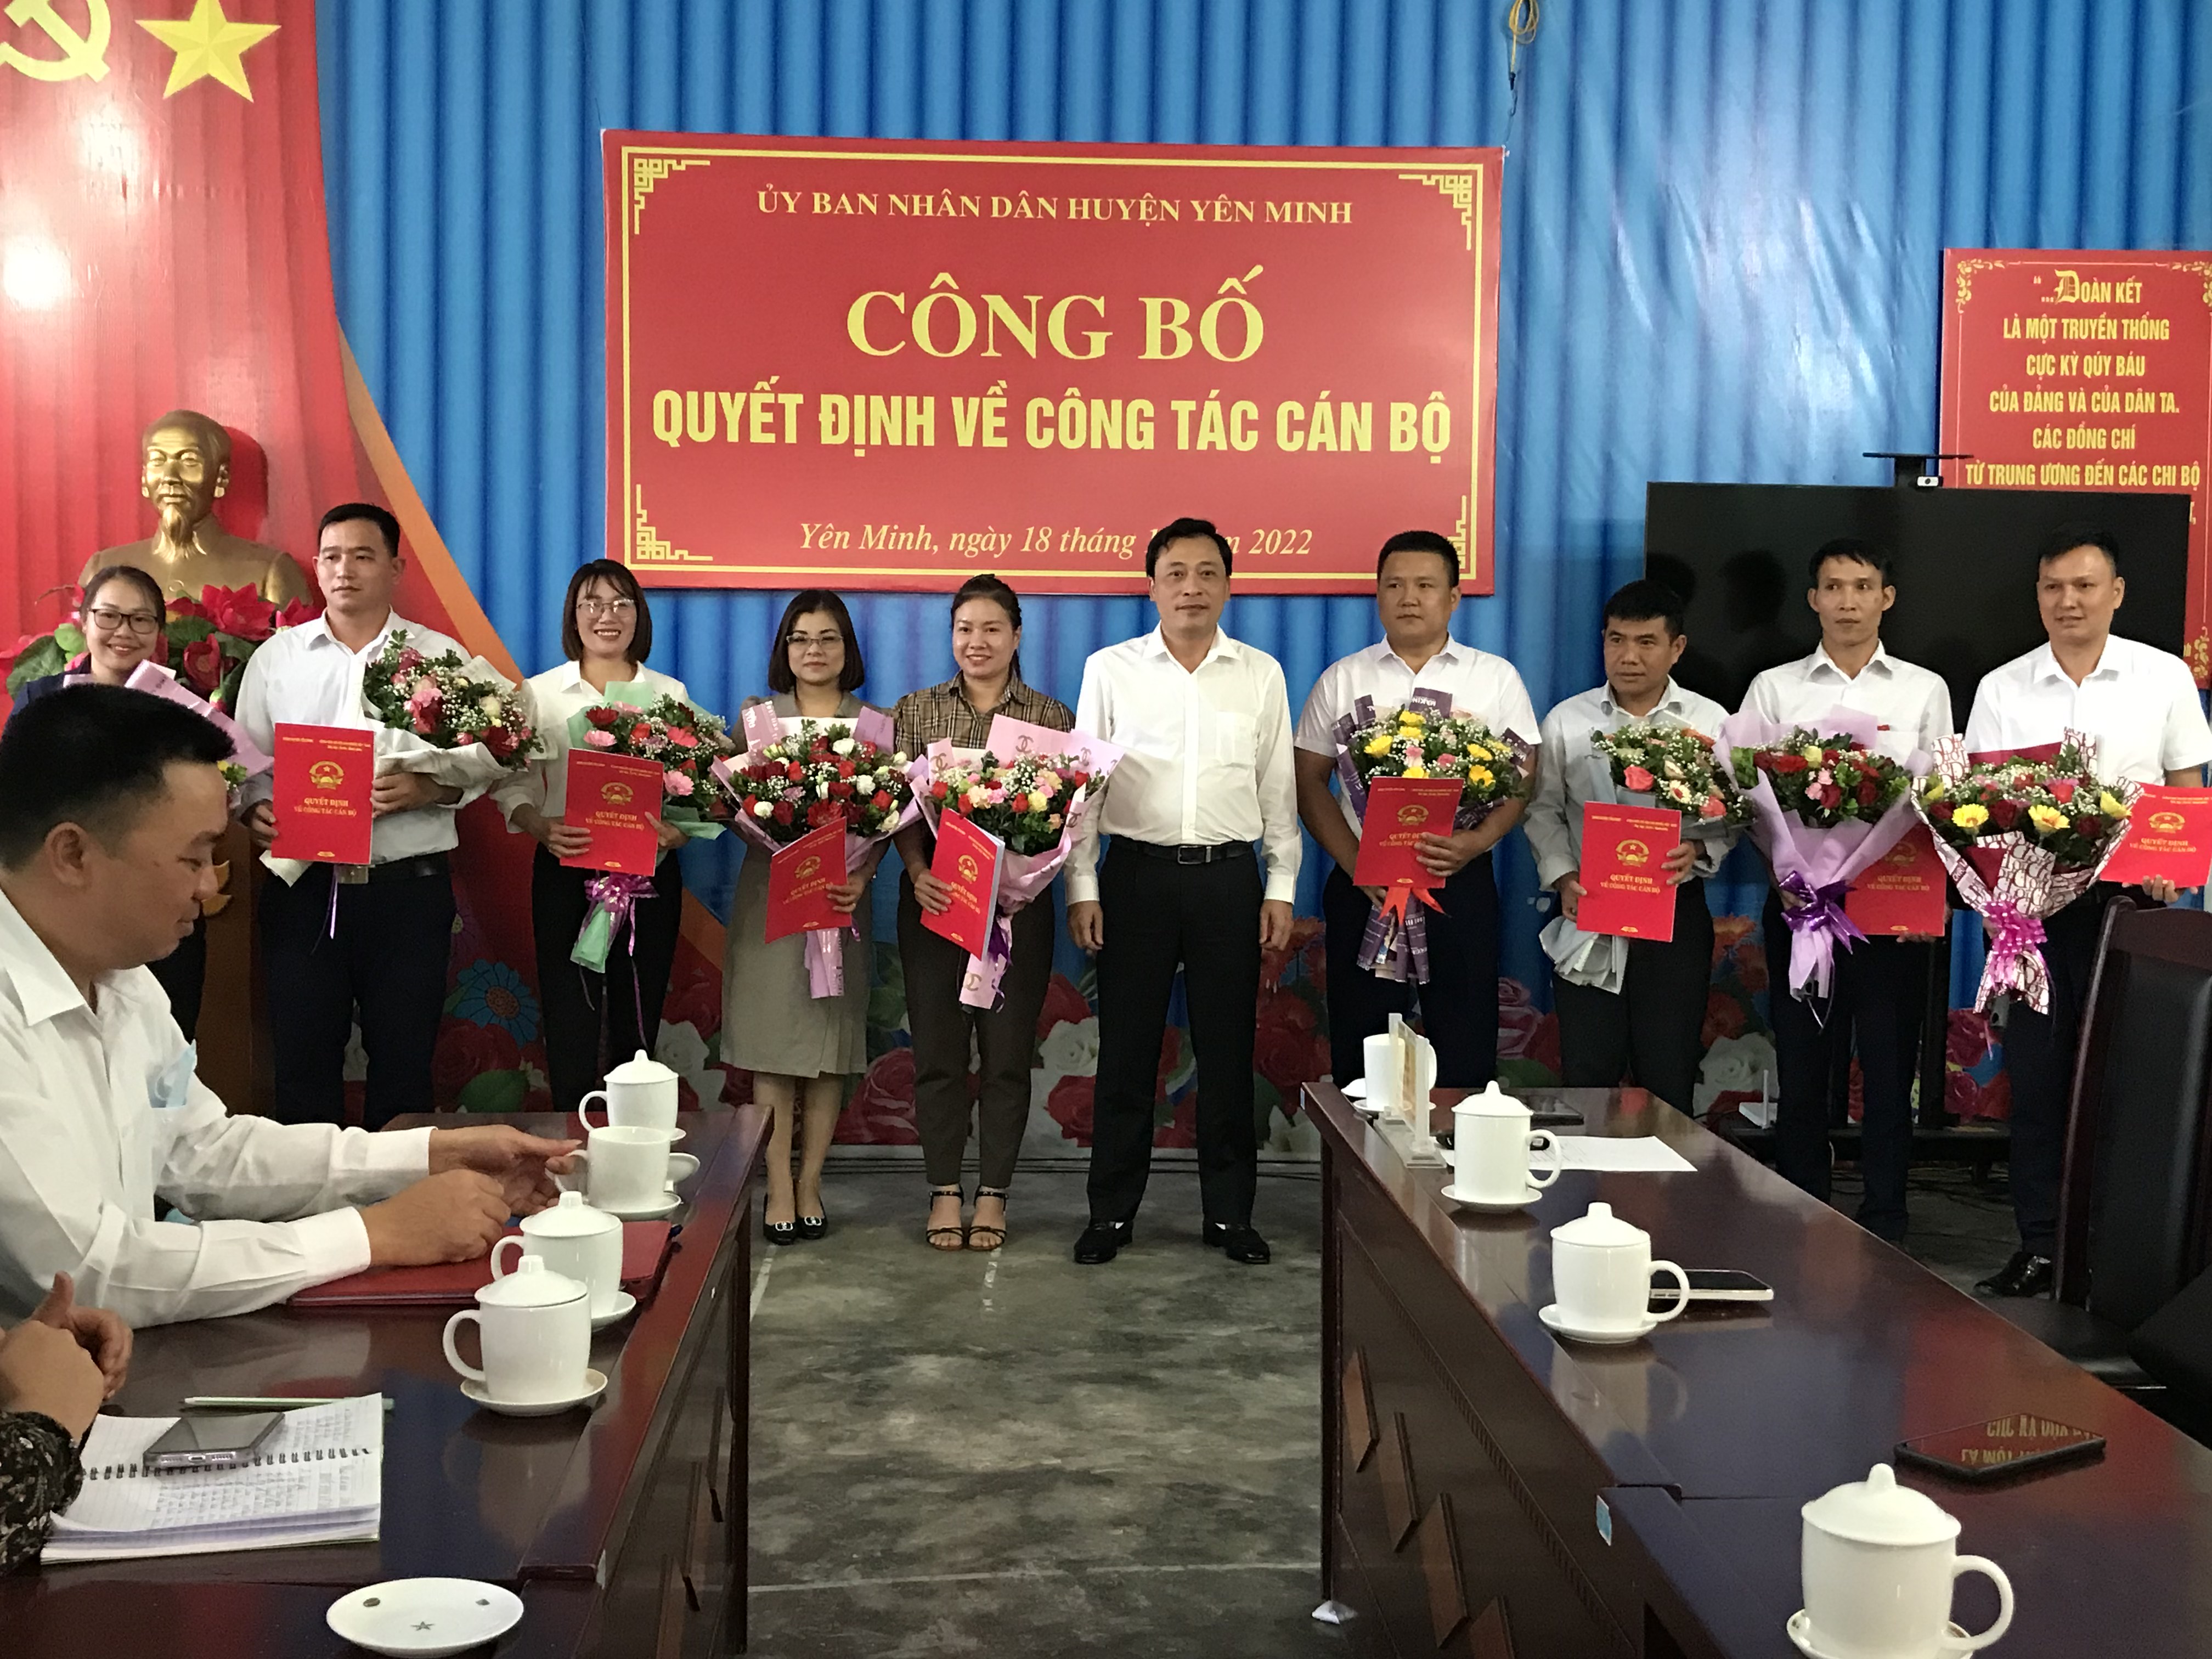 UBND huyện Yên Minh công bố các quyết định về công tác cán bộ